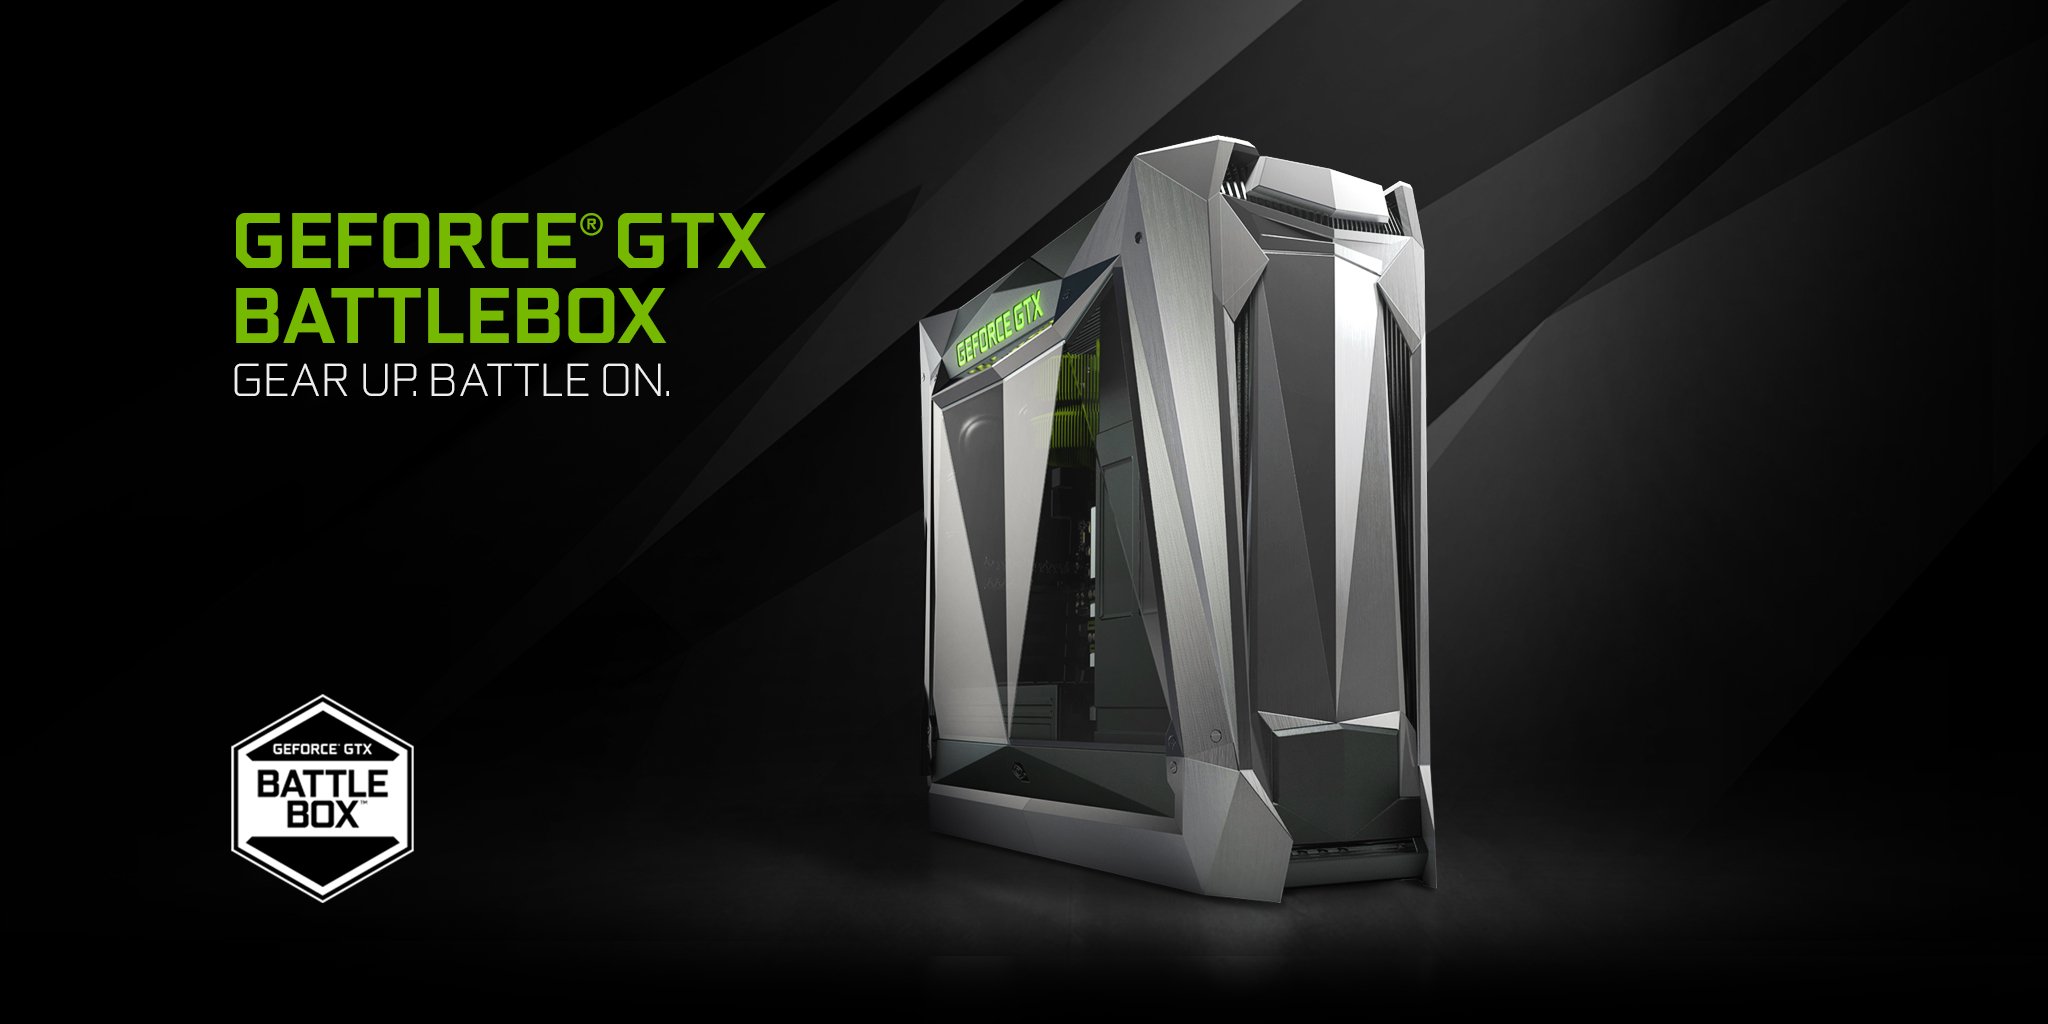 Immagine pubblicata in relazione al seguente contenuto: NVIDIA annuncia la linea di PC desktop gaming-oriented GeForce GTX Battlebox | Nome immagine: news26404_NVIDIA-Battlebox_Gaming-PC_1.jpg